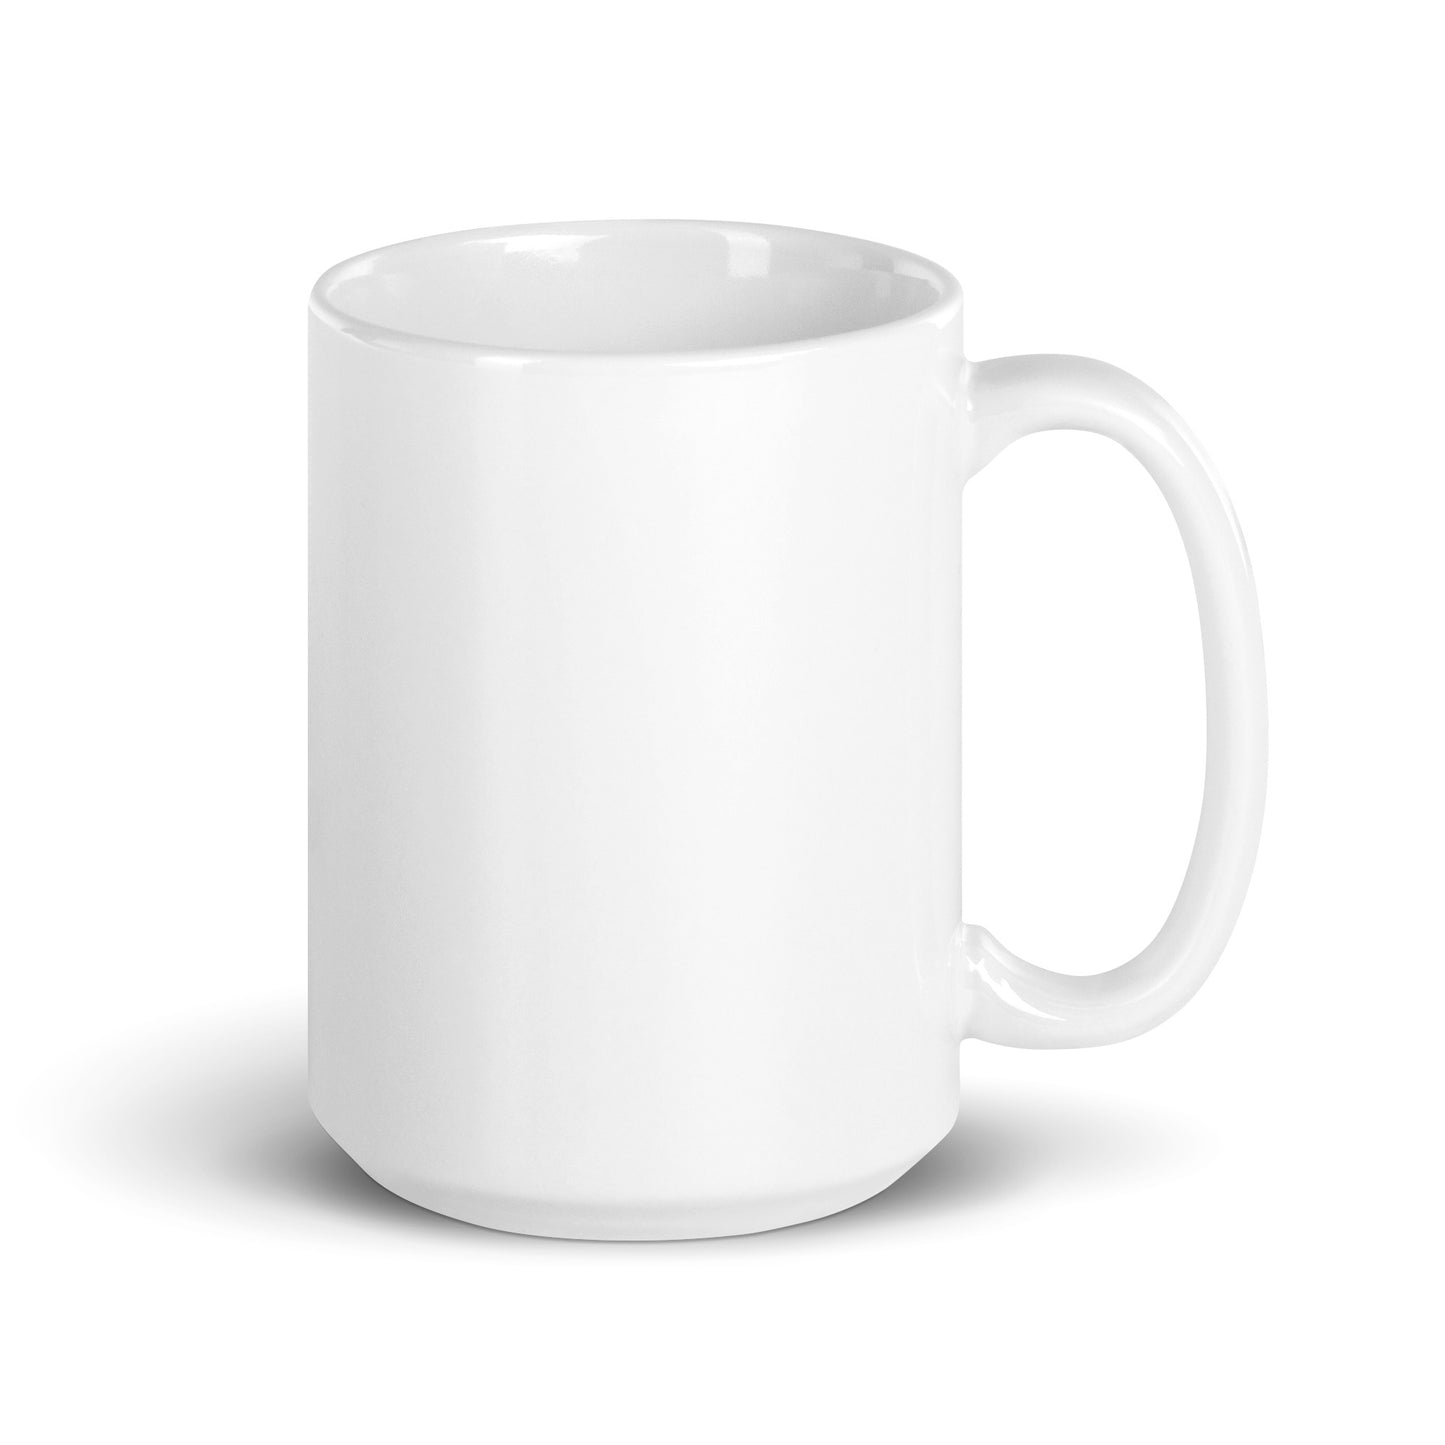 The Notorious PIG (Trump Mugshot) mug